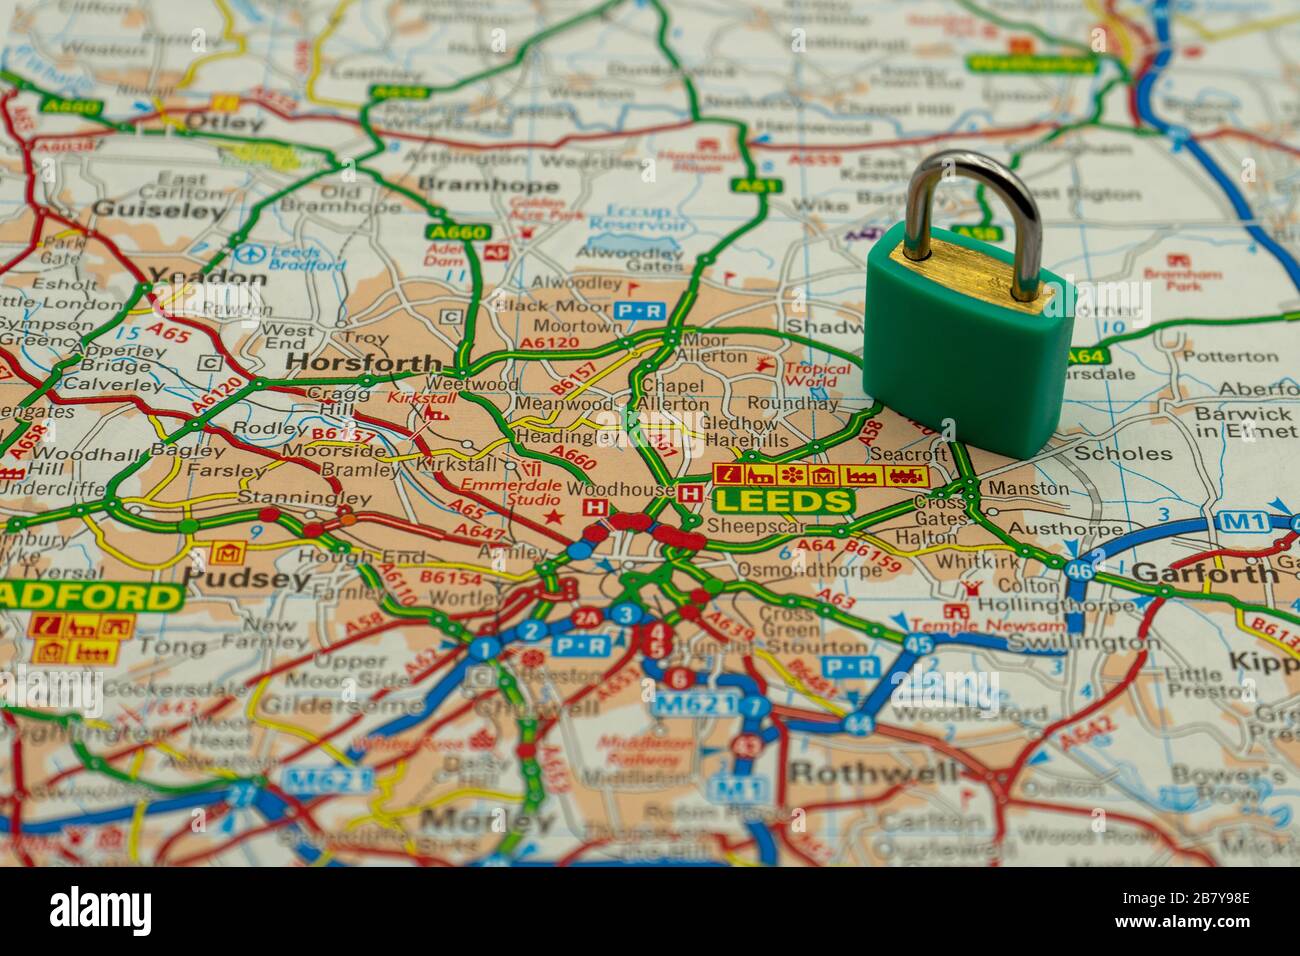 Leeds UK montré sur une carte routière ou géographique avec un cadenas sur le dessus pour représenter une ville en lock-down Banque D'Images